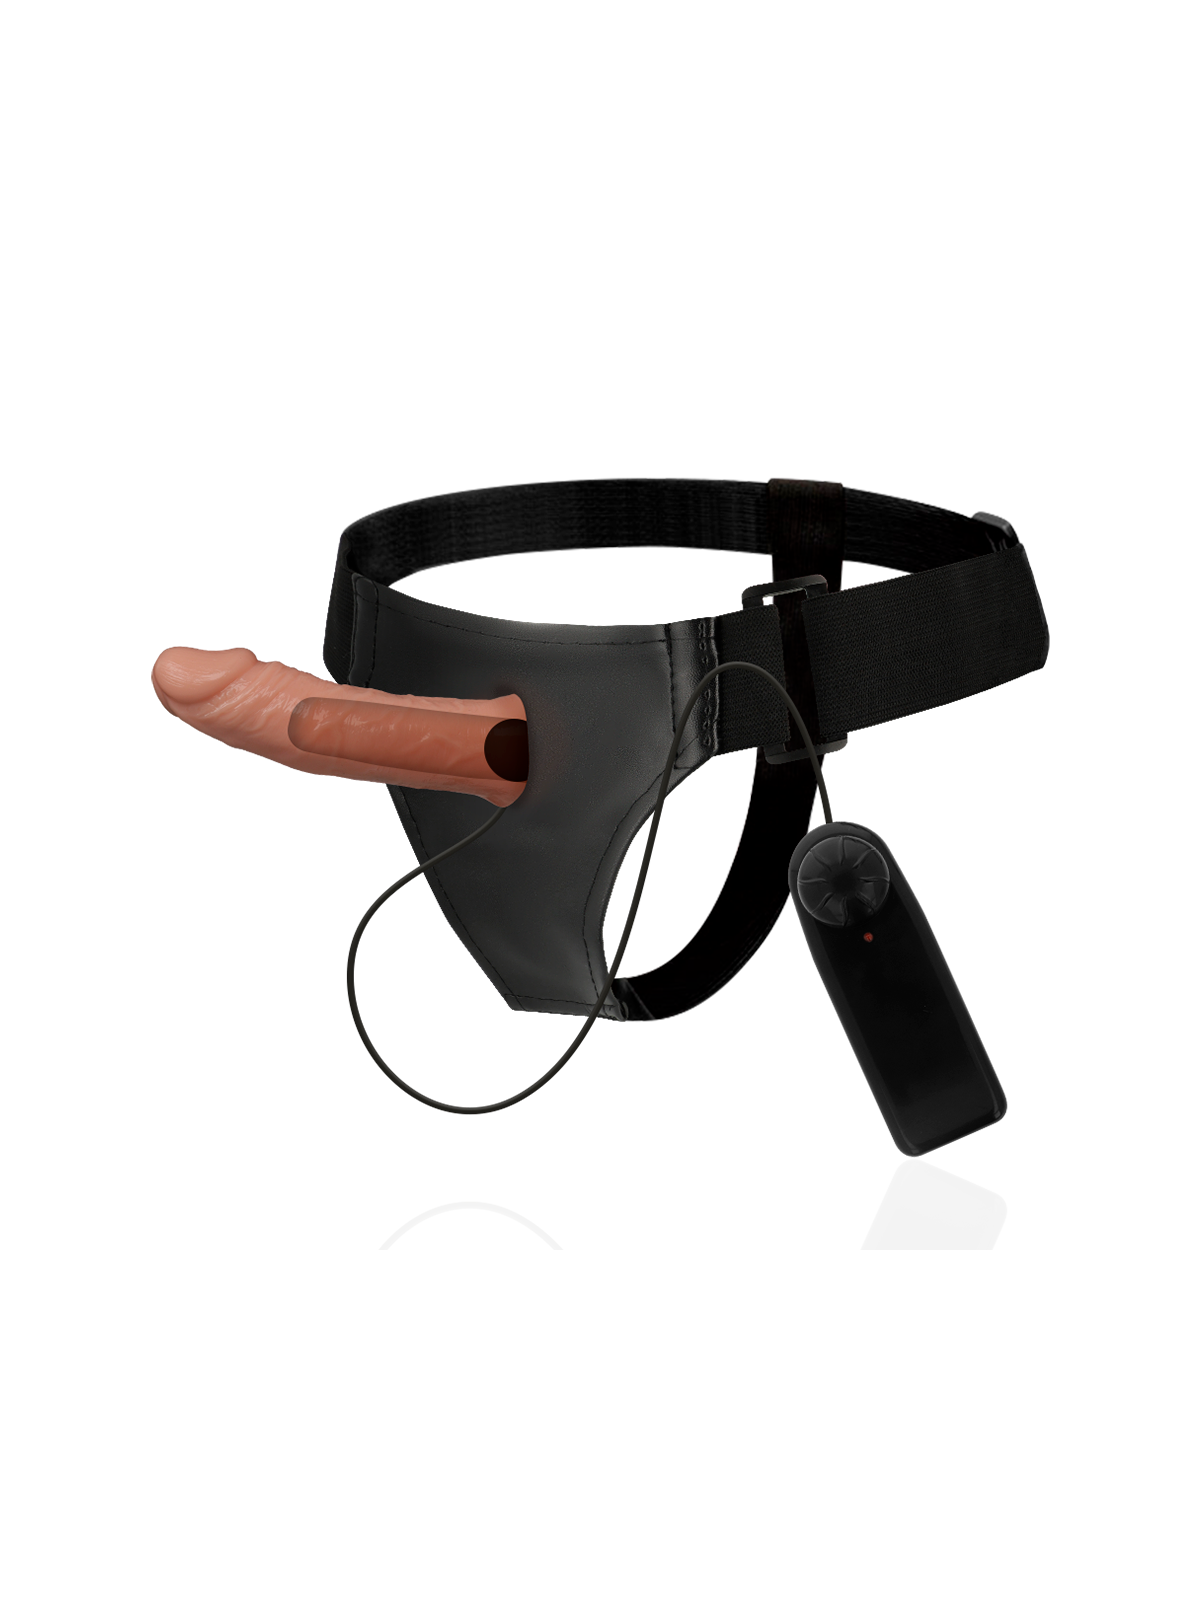 Harness Attraction Árnes Hueco Benny Con Vibrador 15 x 4.5 cm - Comprar Arnés hueco sexual Harness Attraction - Arneses sexuales